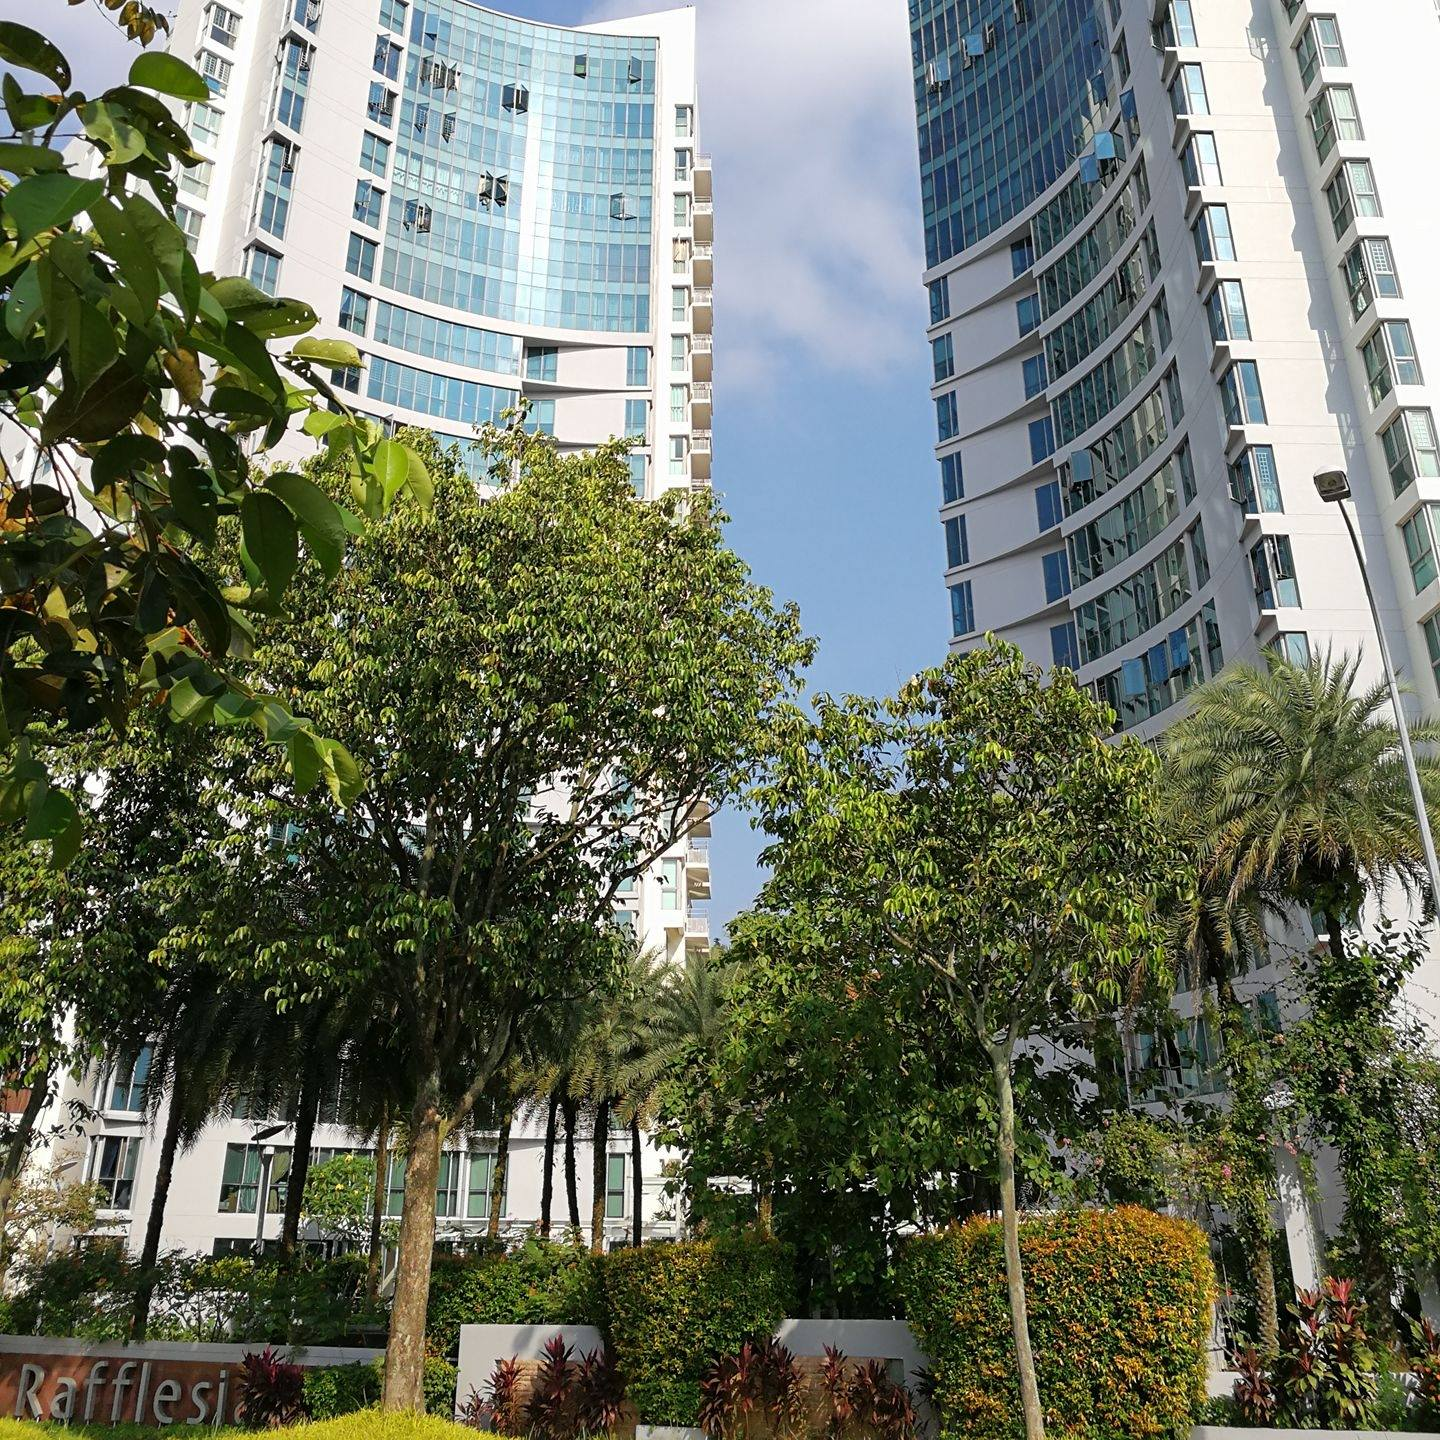 Rafflesia condominium in bishan, singapore